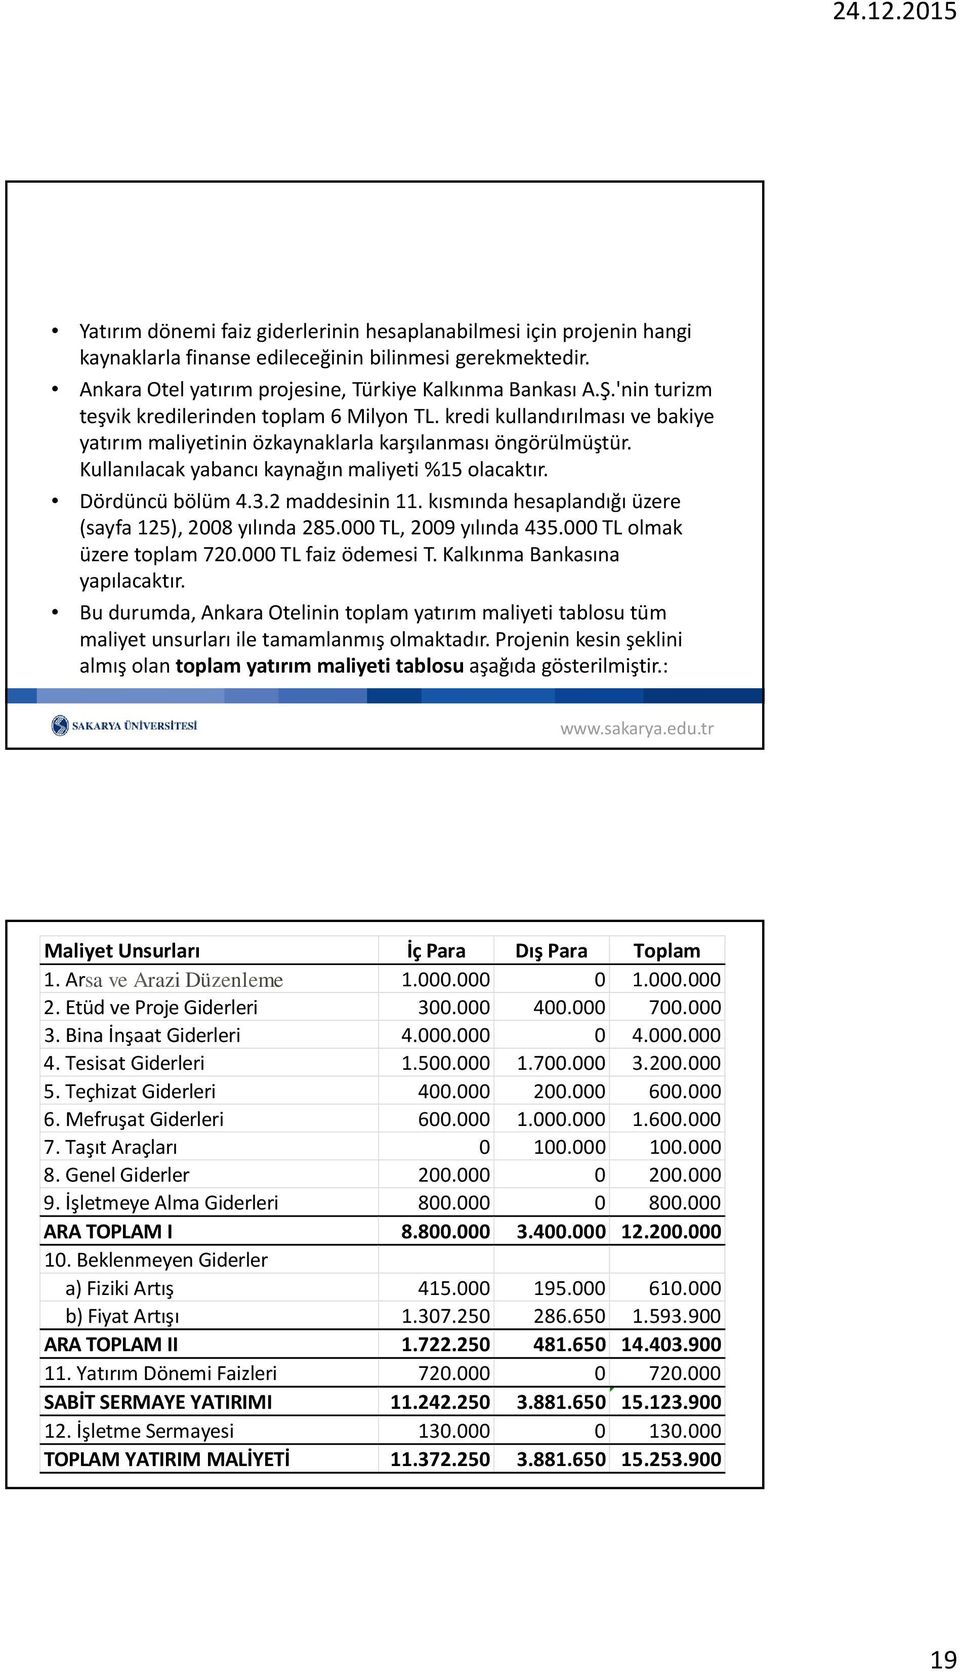 Dördüncü bölüm 4.3.2 maddesinin 11. kısmında hesaplandığı üzere (sayfa 125), 2008 yılında 285.000 TL, 2009 yılında 435.000 TL olmak üzere toplam 720.000 TL faiz ödemesi T.